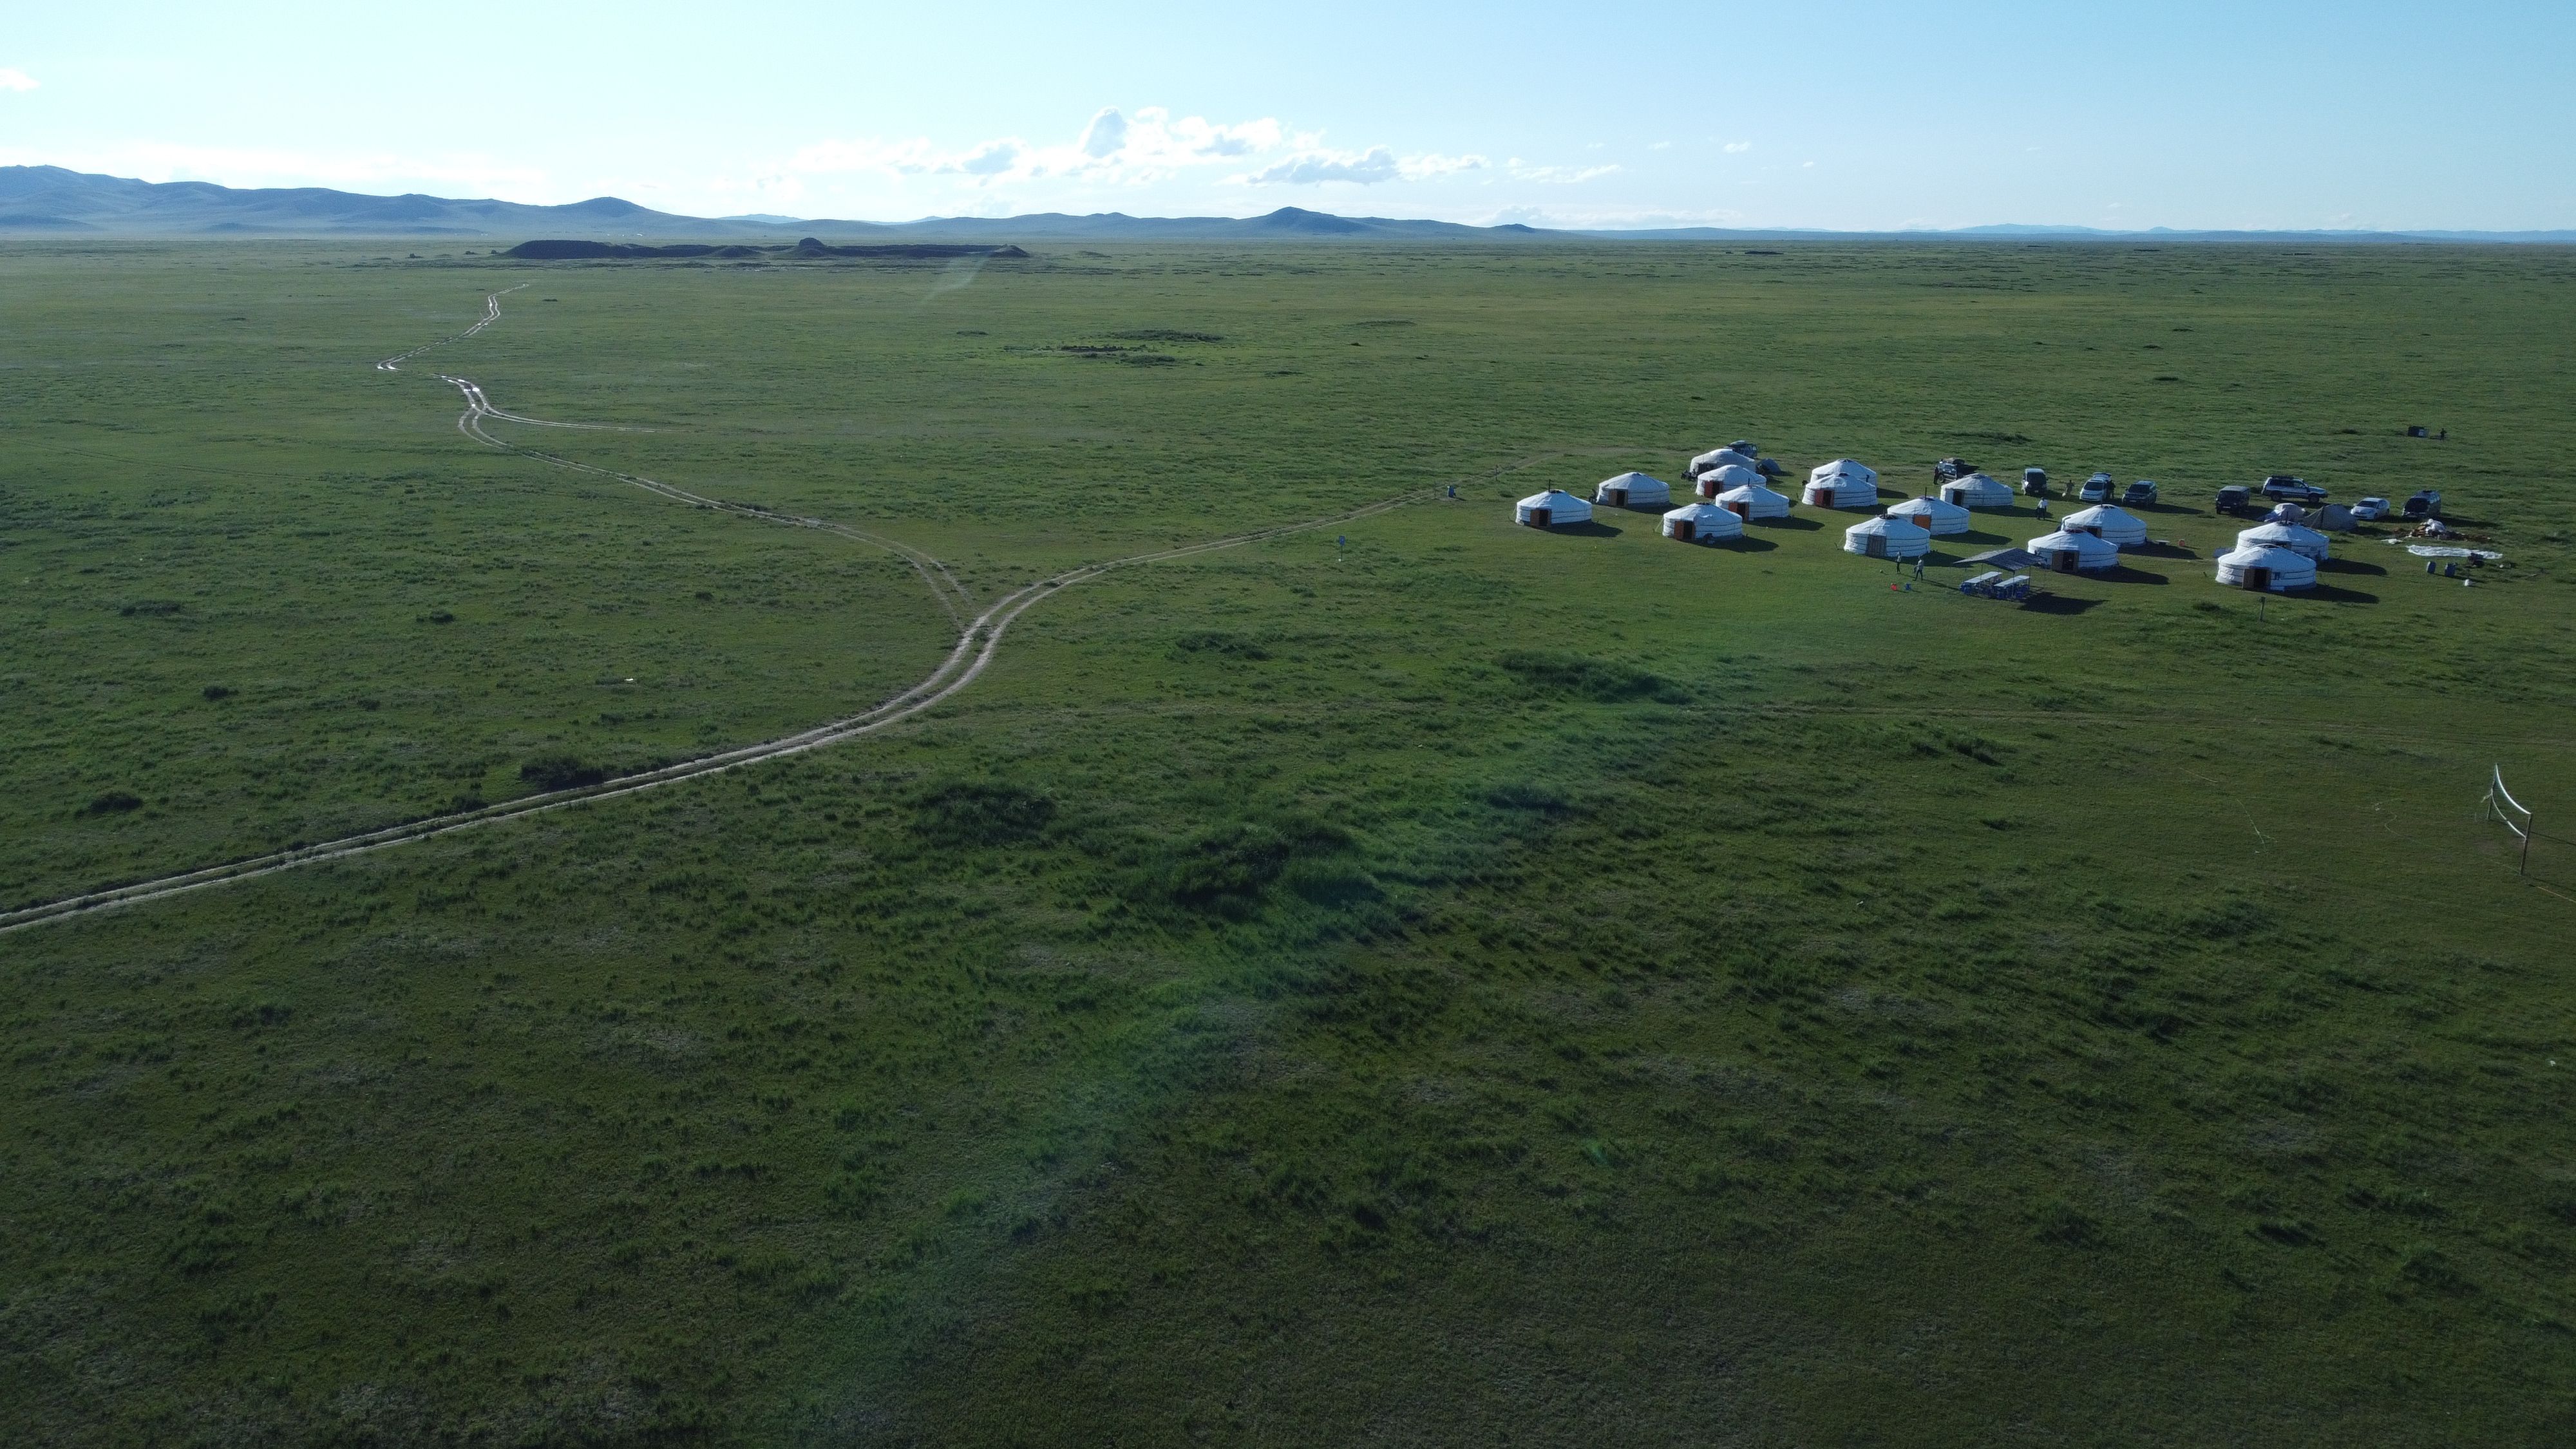 Das Bild zeigt eine Steppenlandschaft im Hintergrund sind die Ruinen einer alten Stadt zu sehen, im Vordergrund ein Camp aus zahlreichen mongolischen Jurten